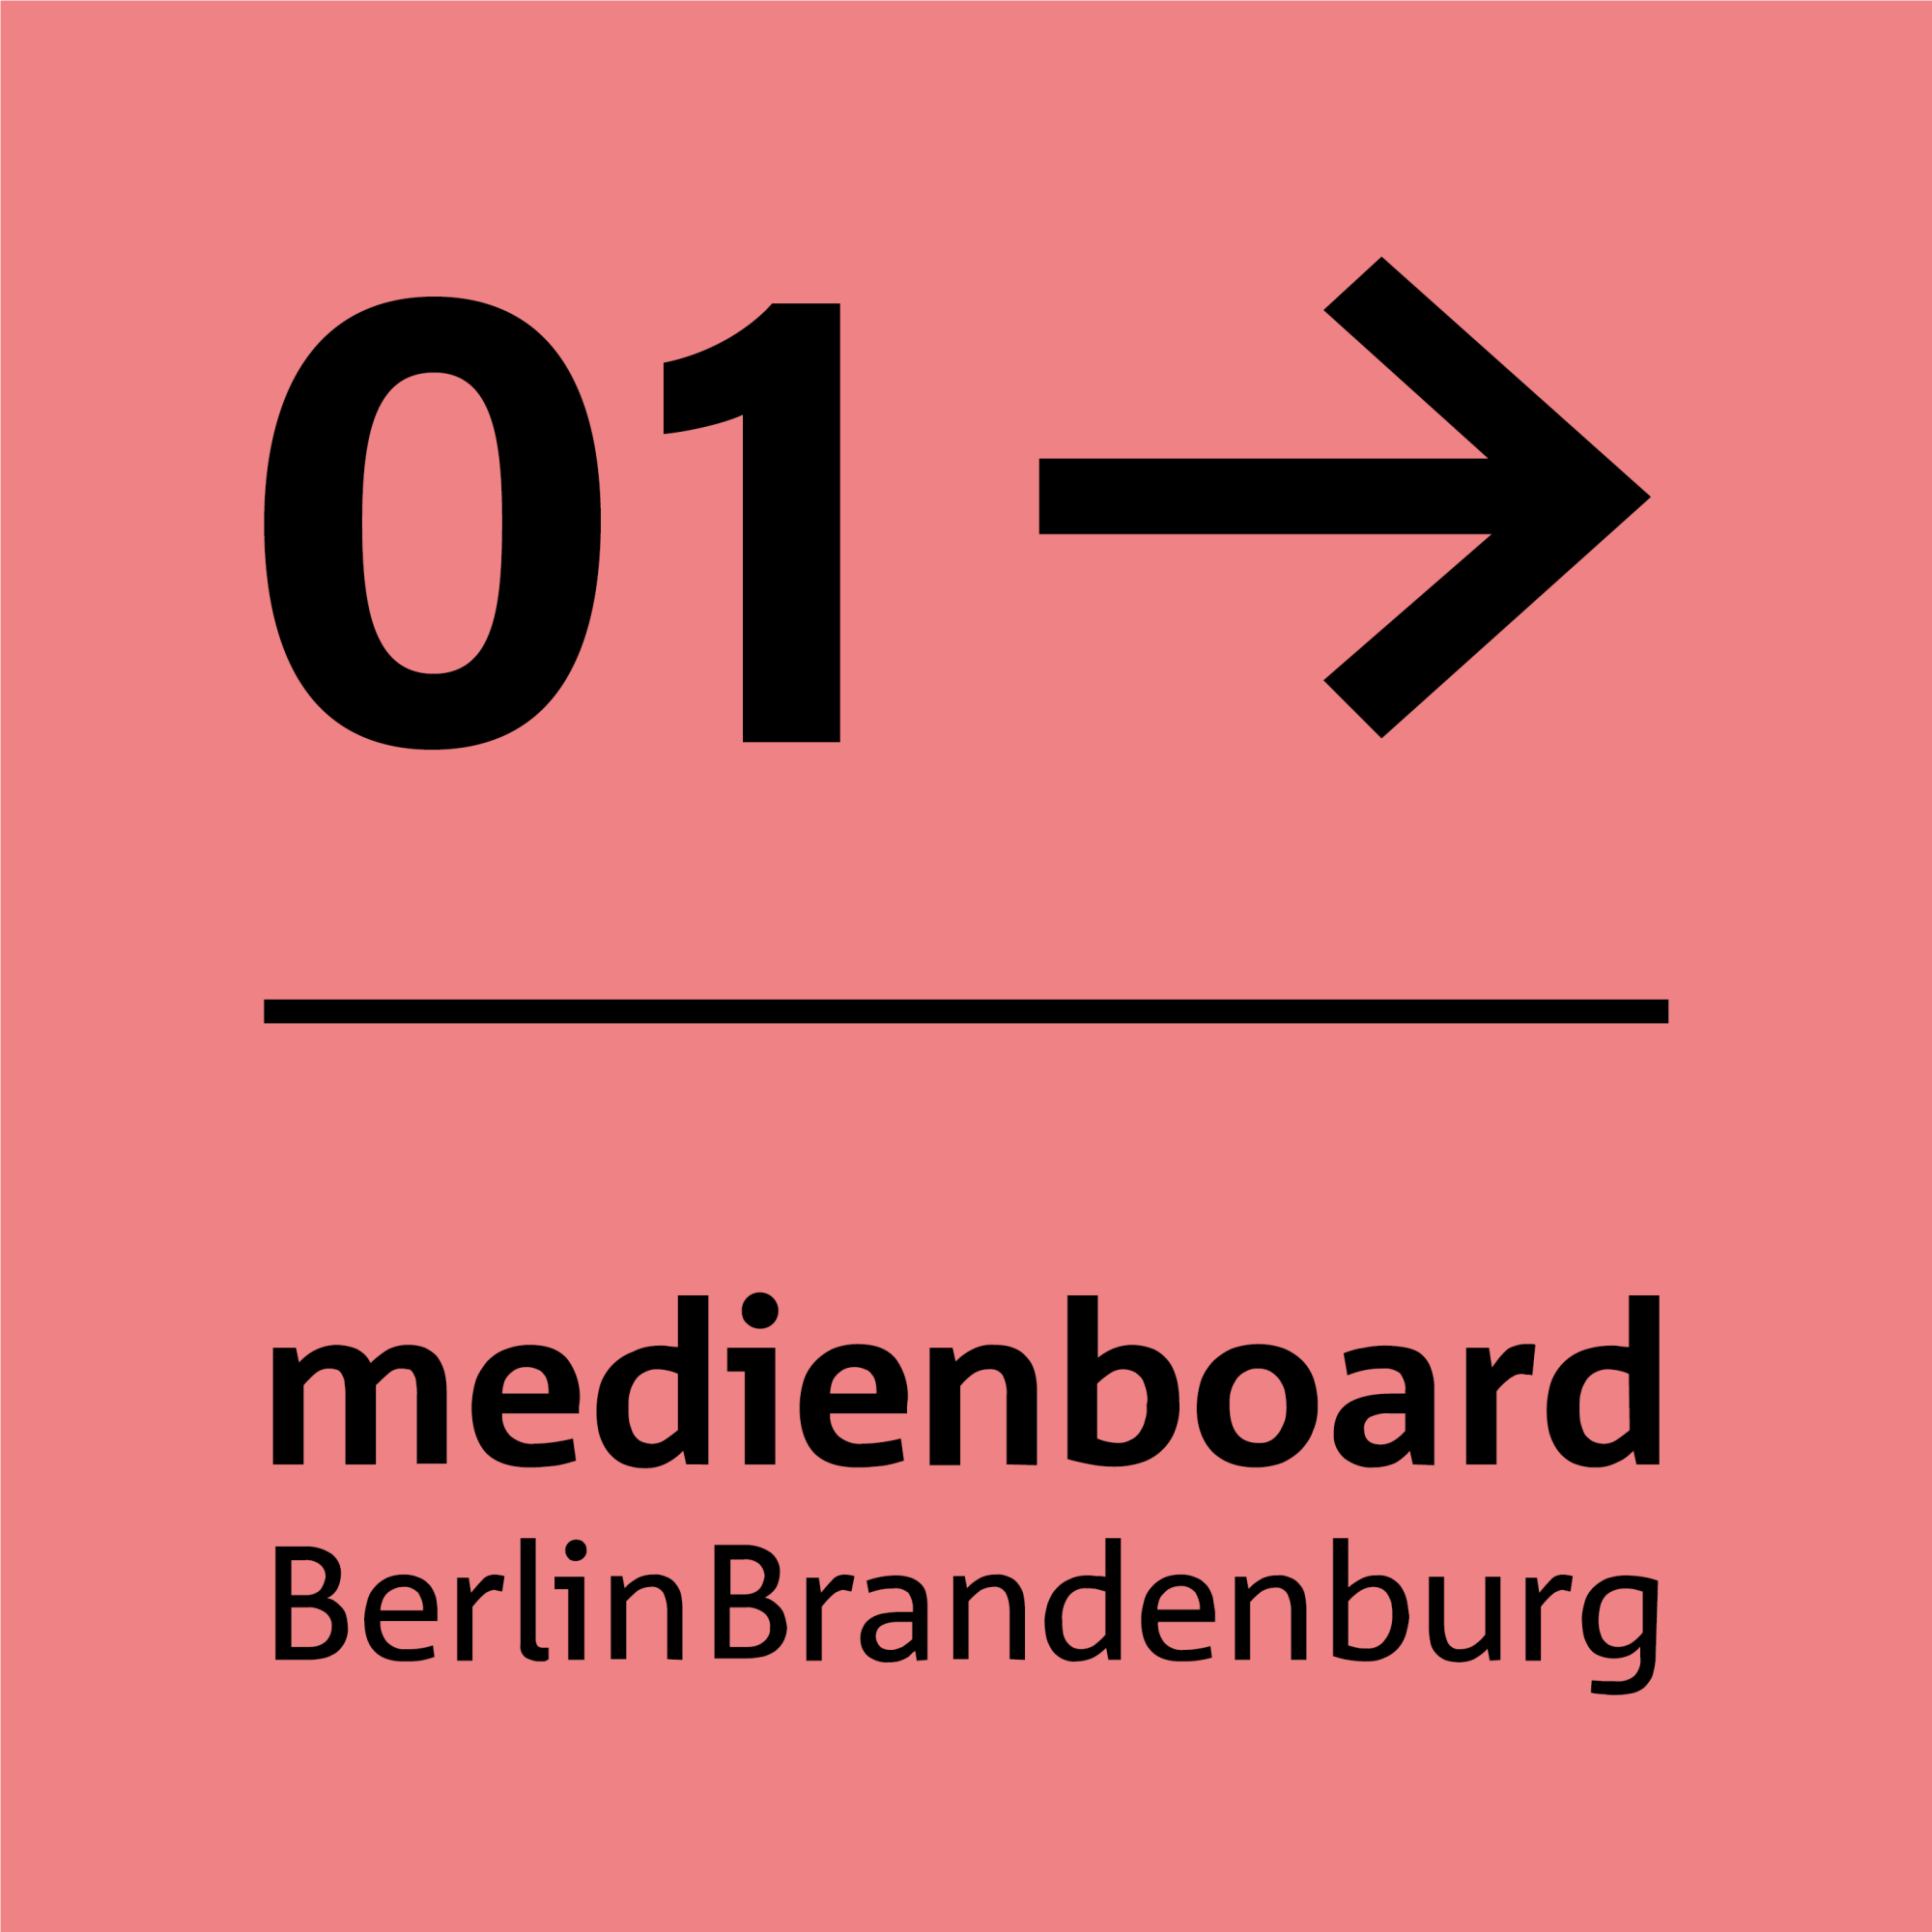 Medienboard